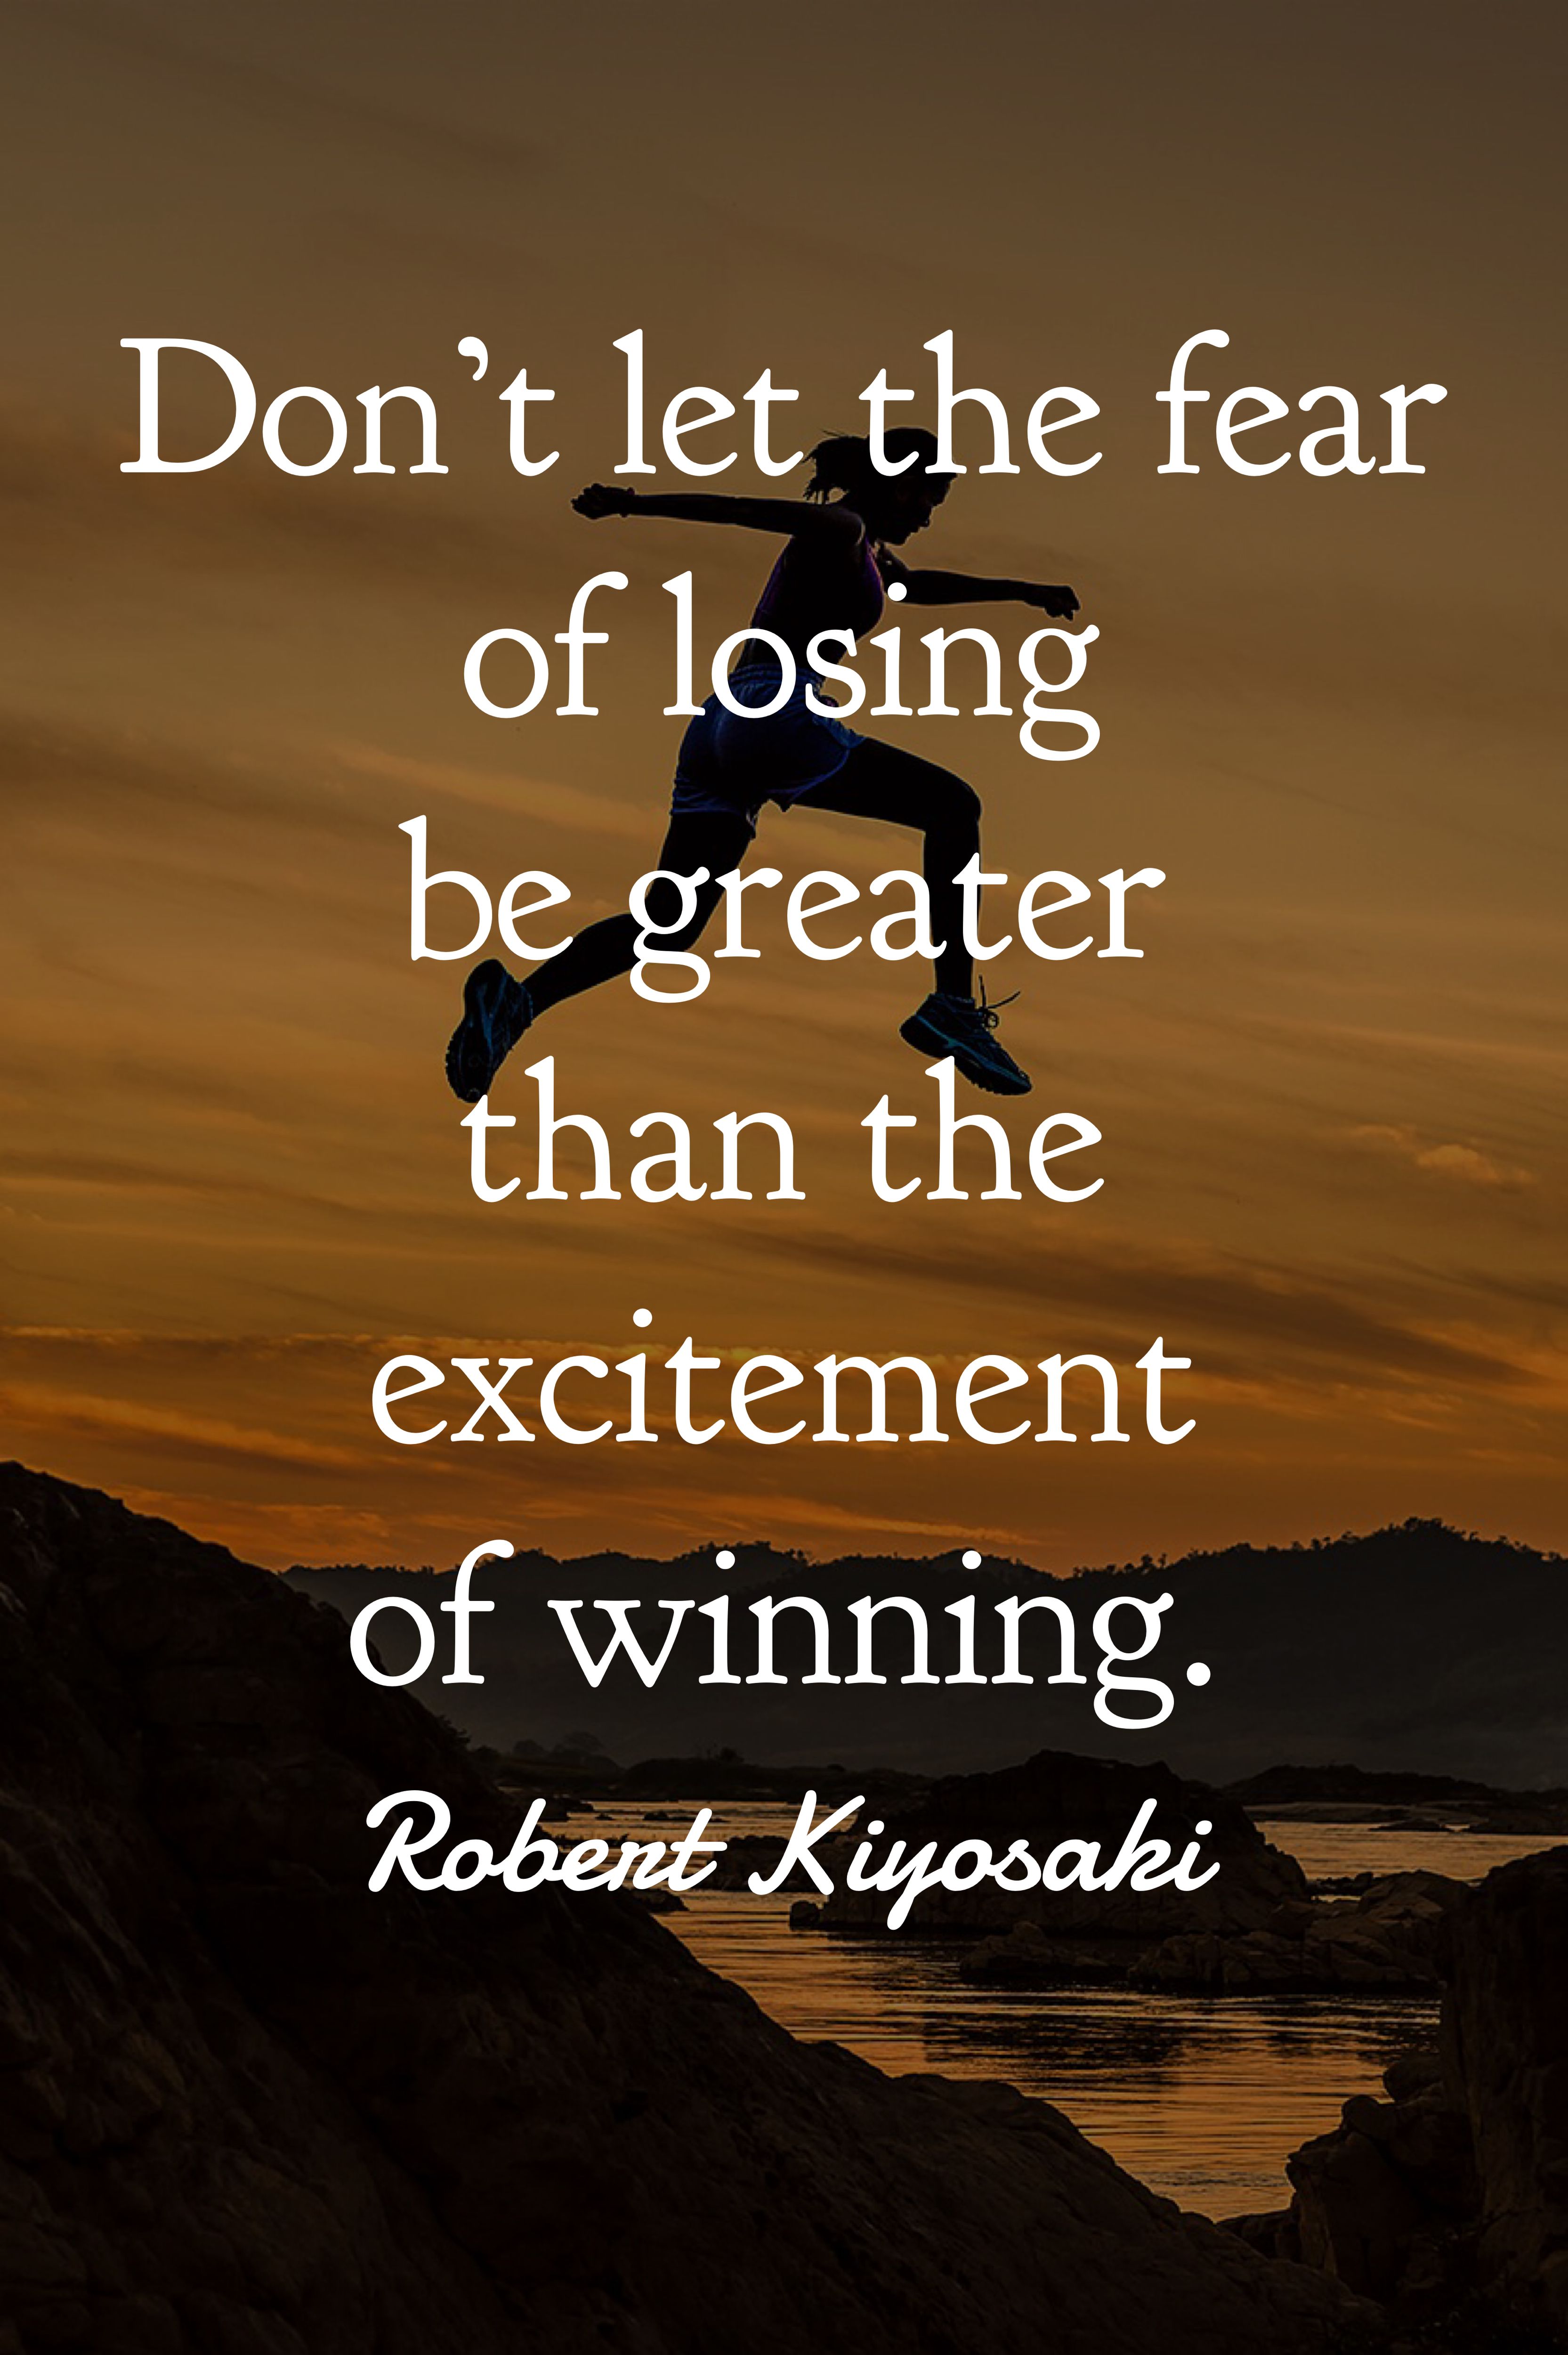 Robert Kiyosaki Quotes On Success. Robert